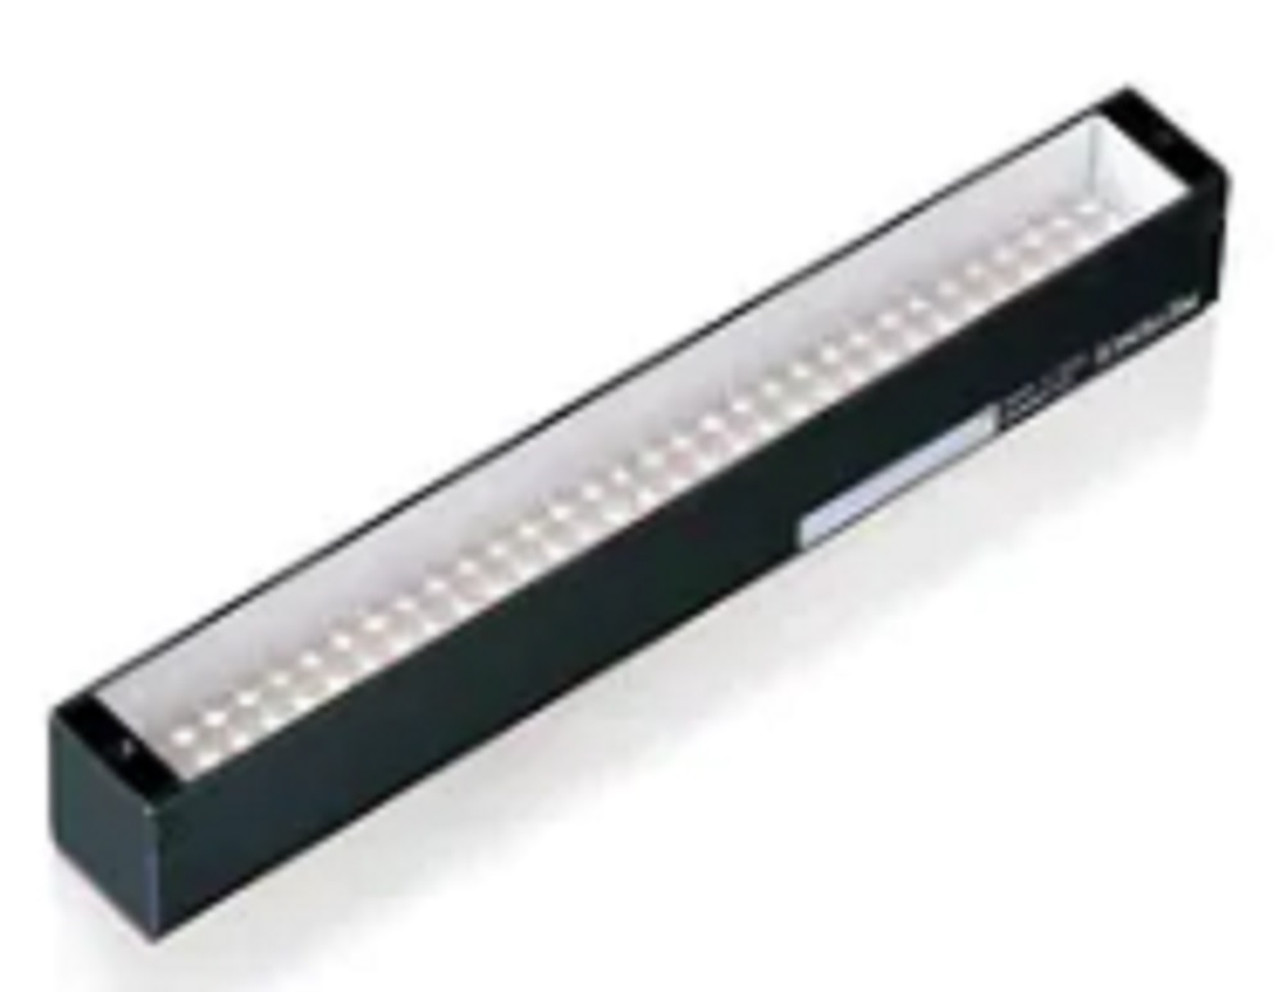 Keyence CA-DBW13 Vision System LED Light, White Bar Light 132 mm [New]